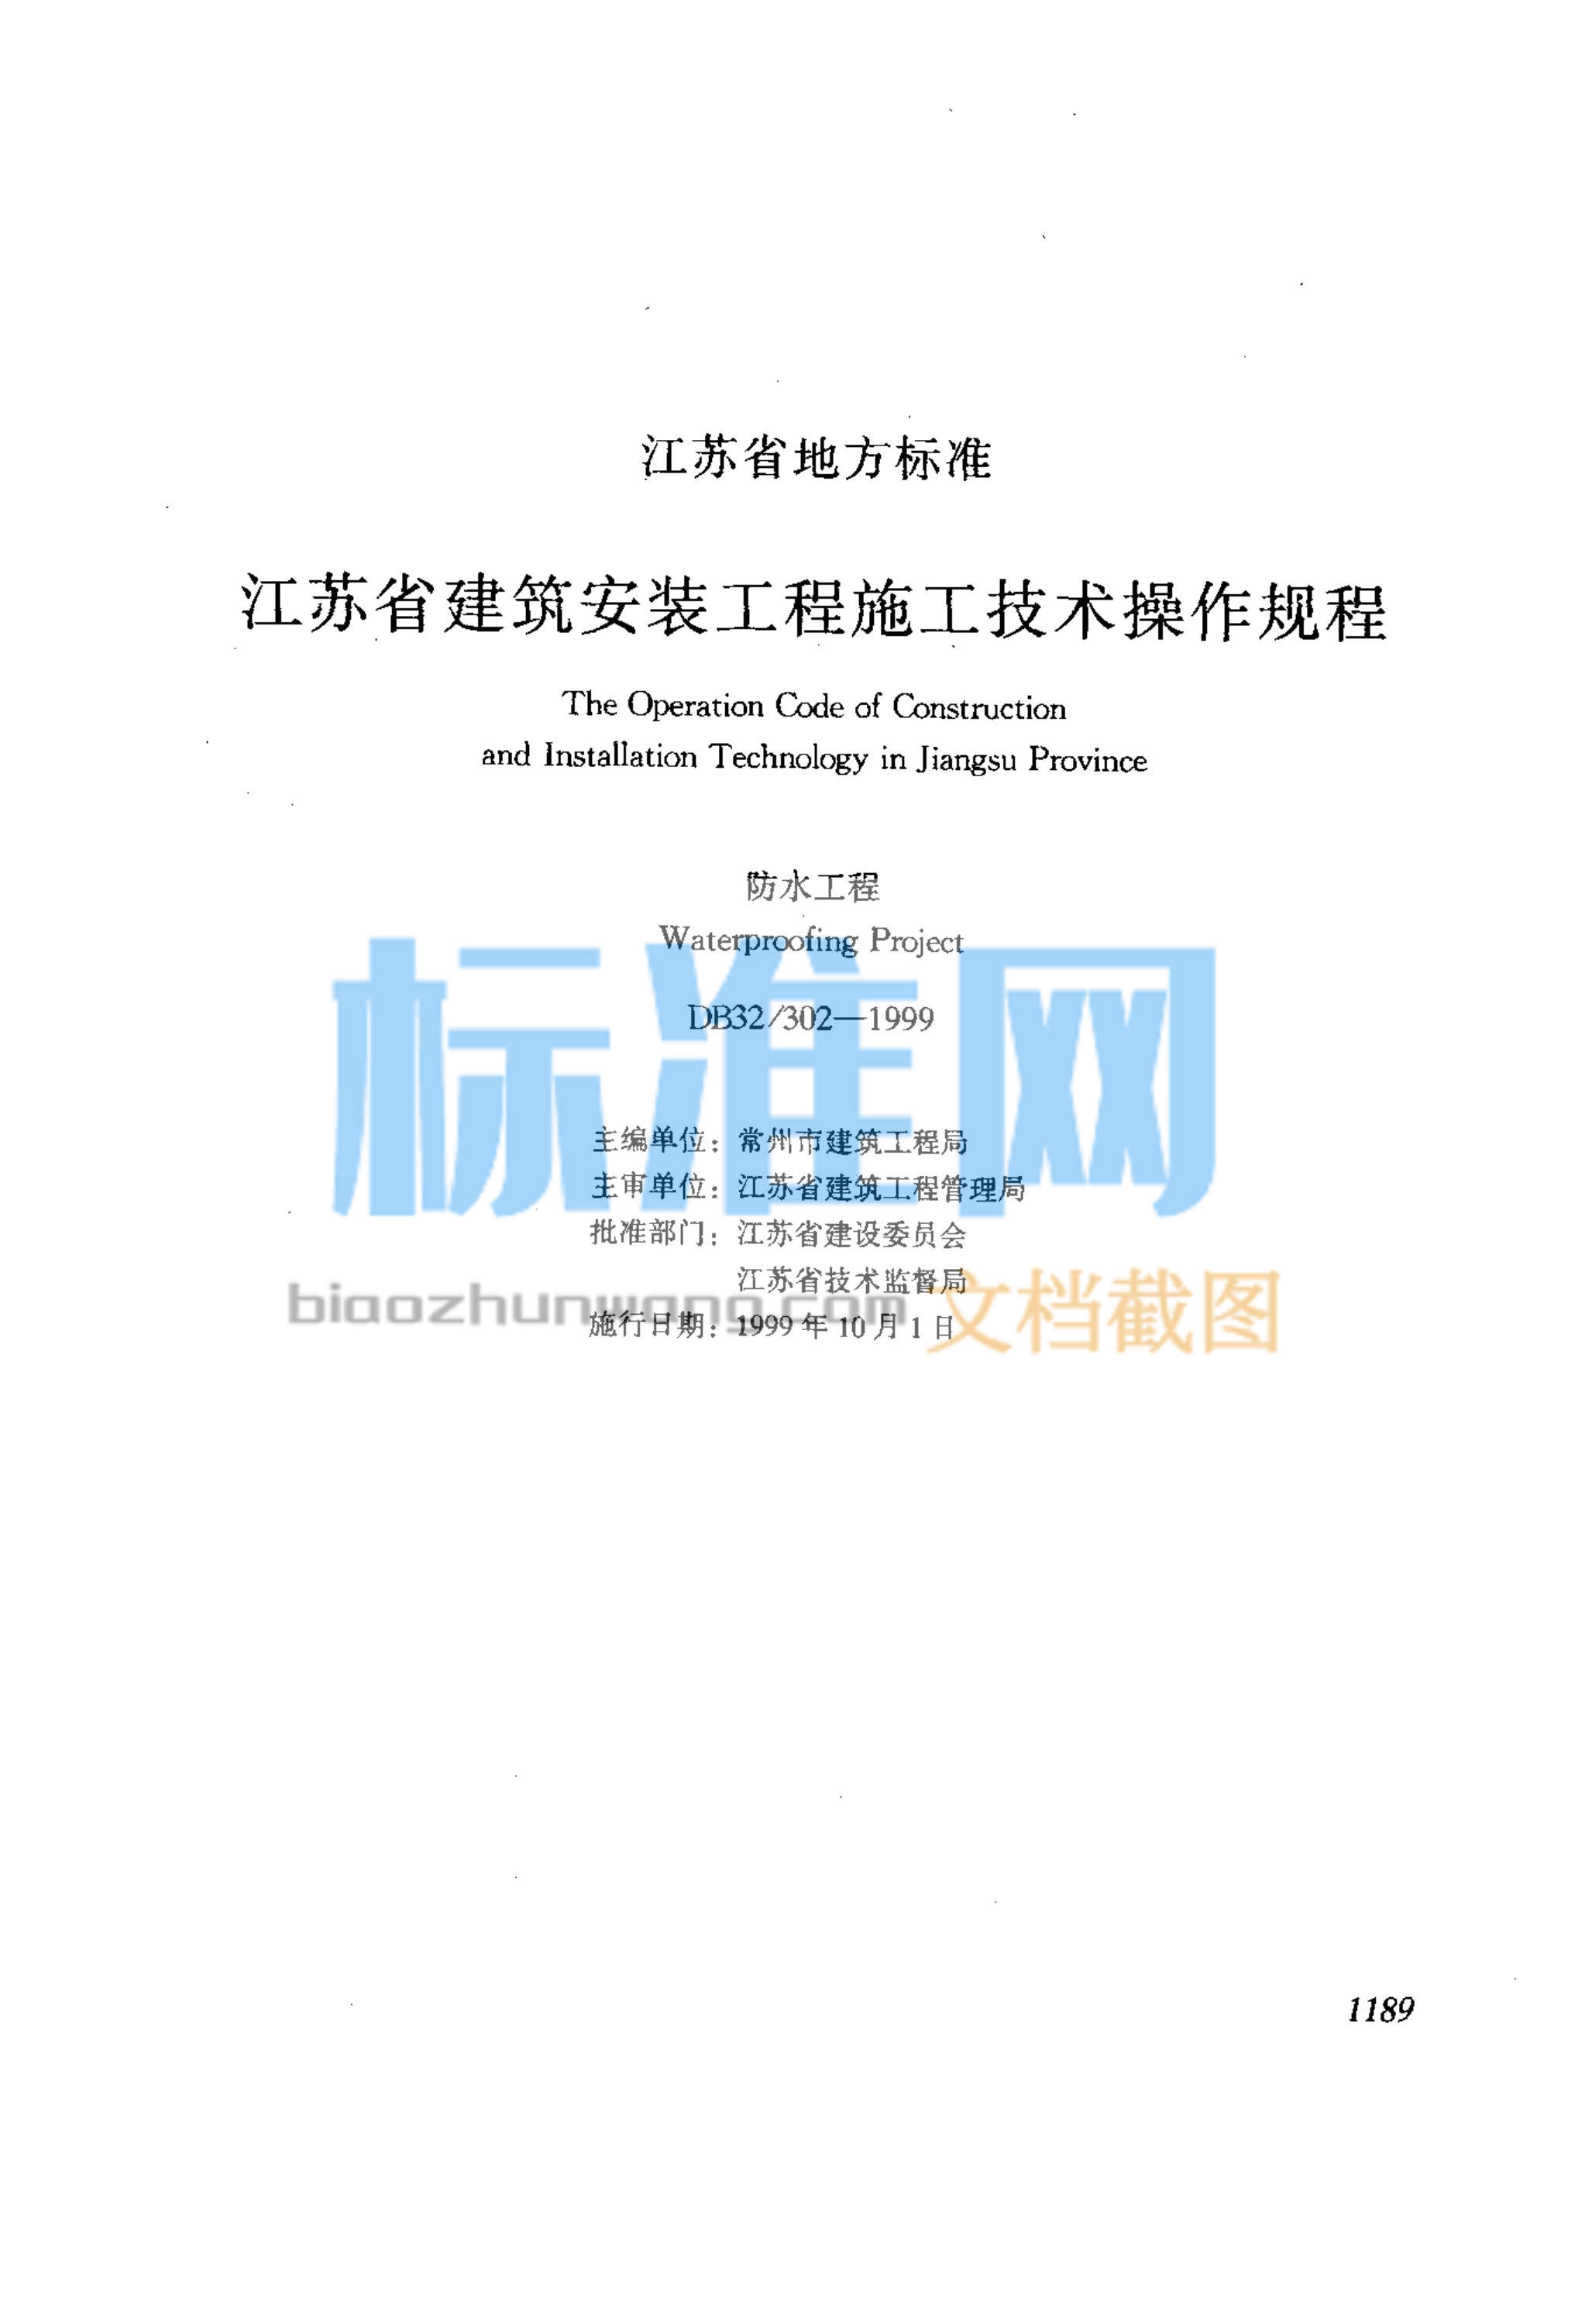 DB32/302-1999 江苏省建筑安装工程施工技术操作规程 防水工程